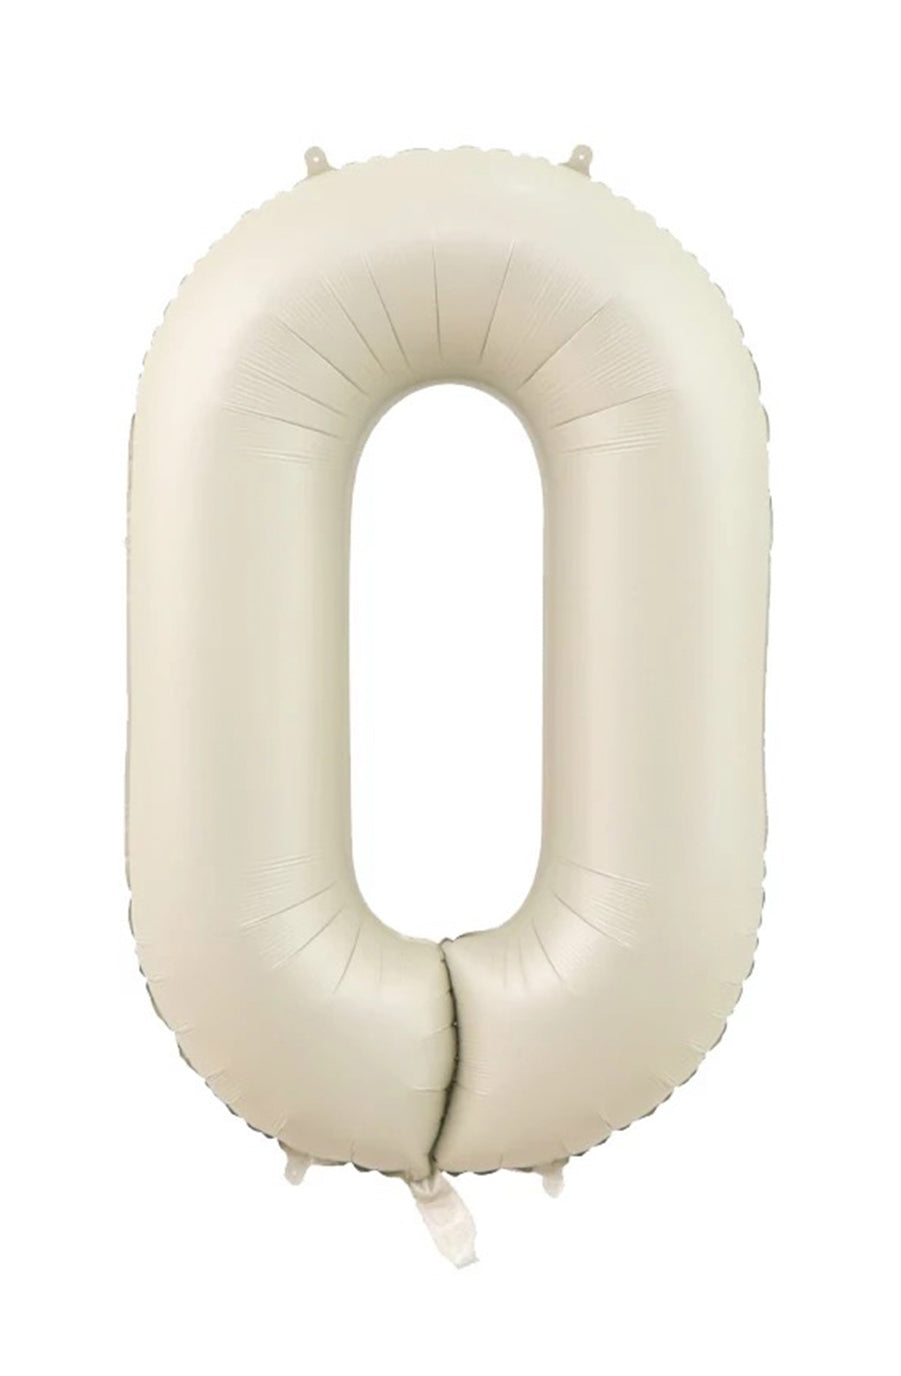 Jumbo Matte Cream Foil Number 0 Balloon 100cm